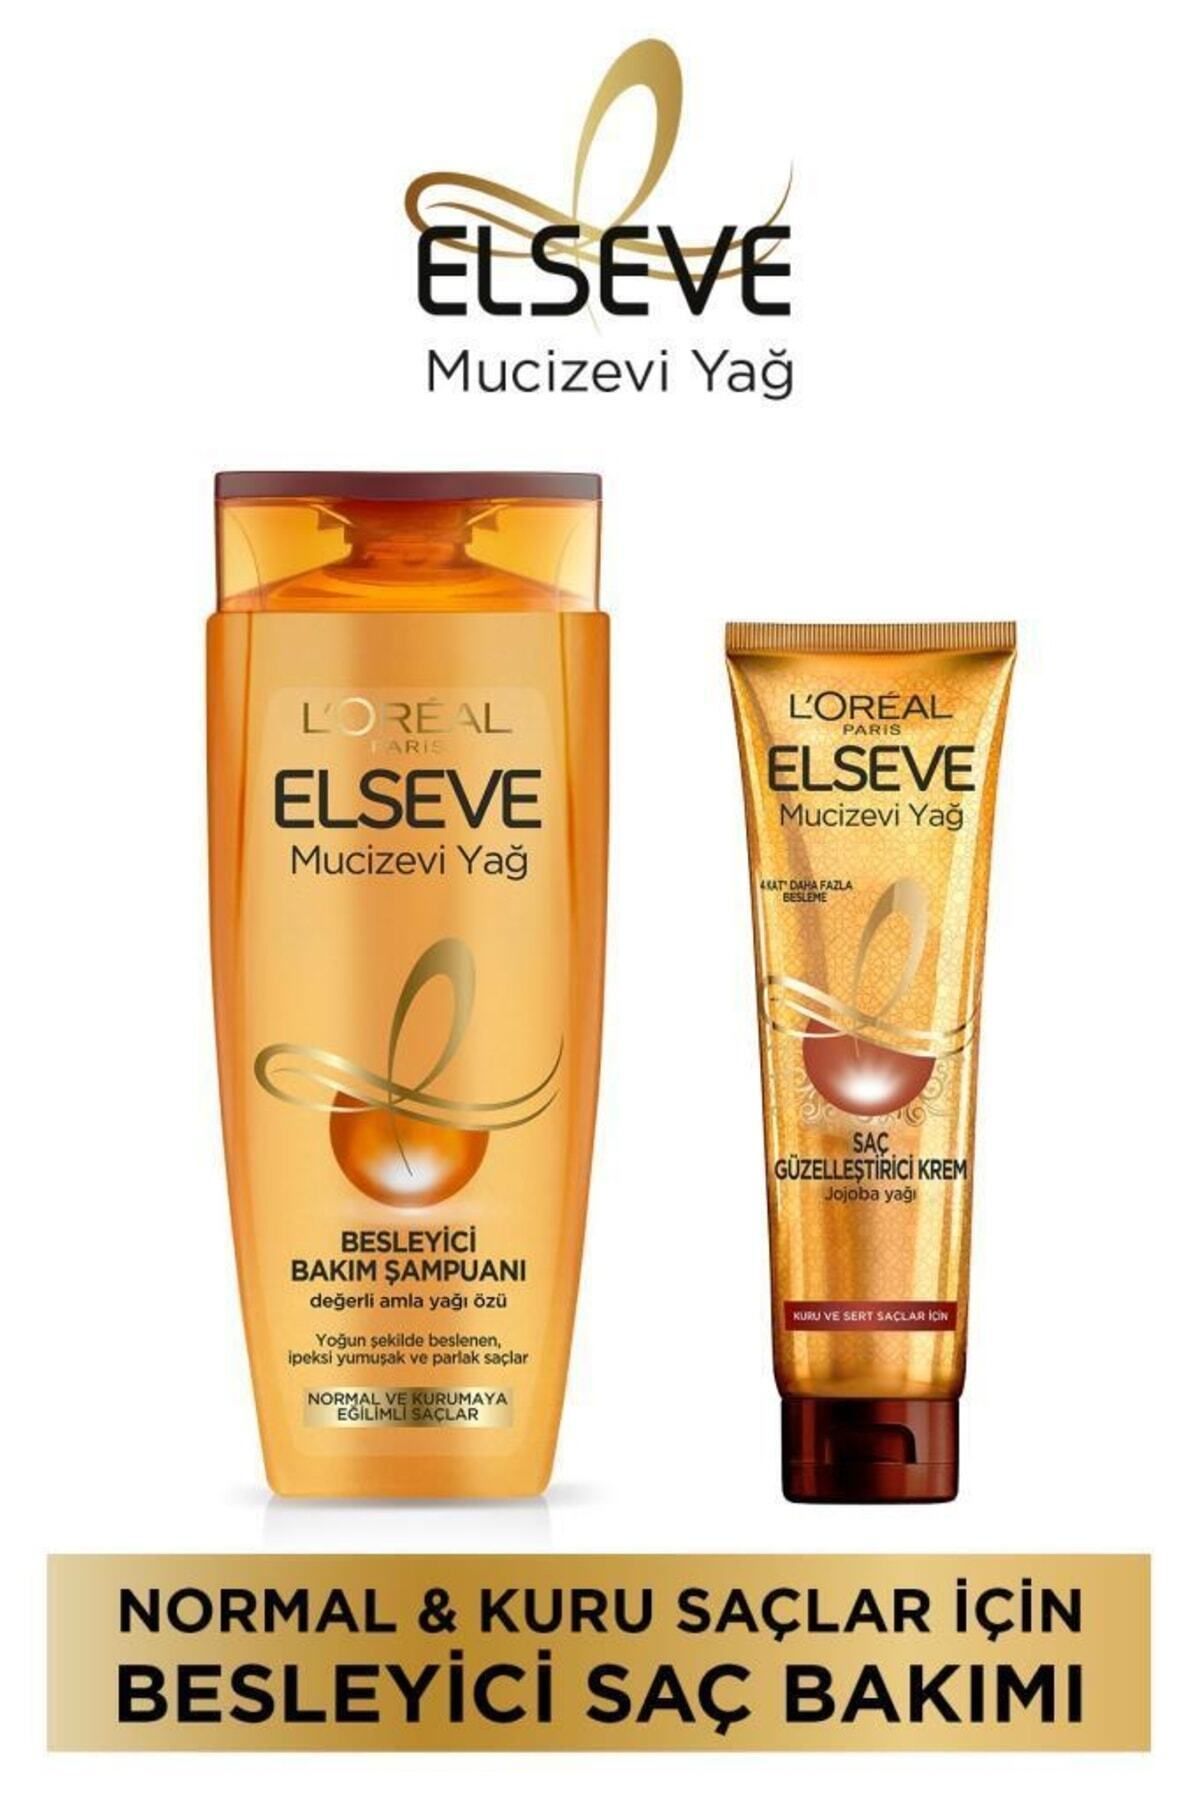 Elseve Mucizevi Yağ Besleyici Bakım Şampuanı 390 Ml + Mucizevi Yağ Saç Güzelleştirici Krem 150 Ml